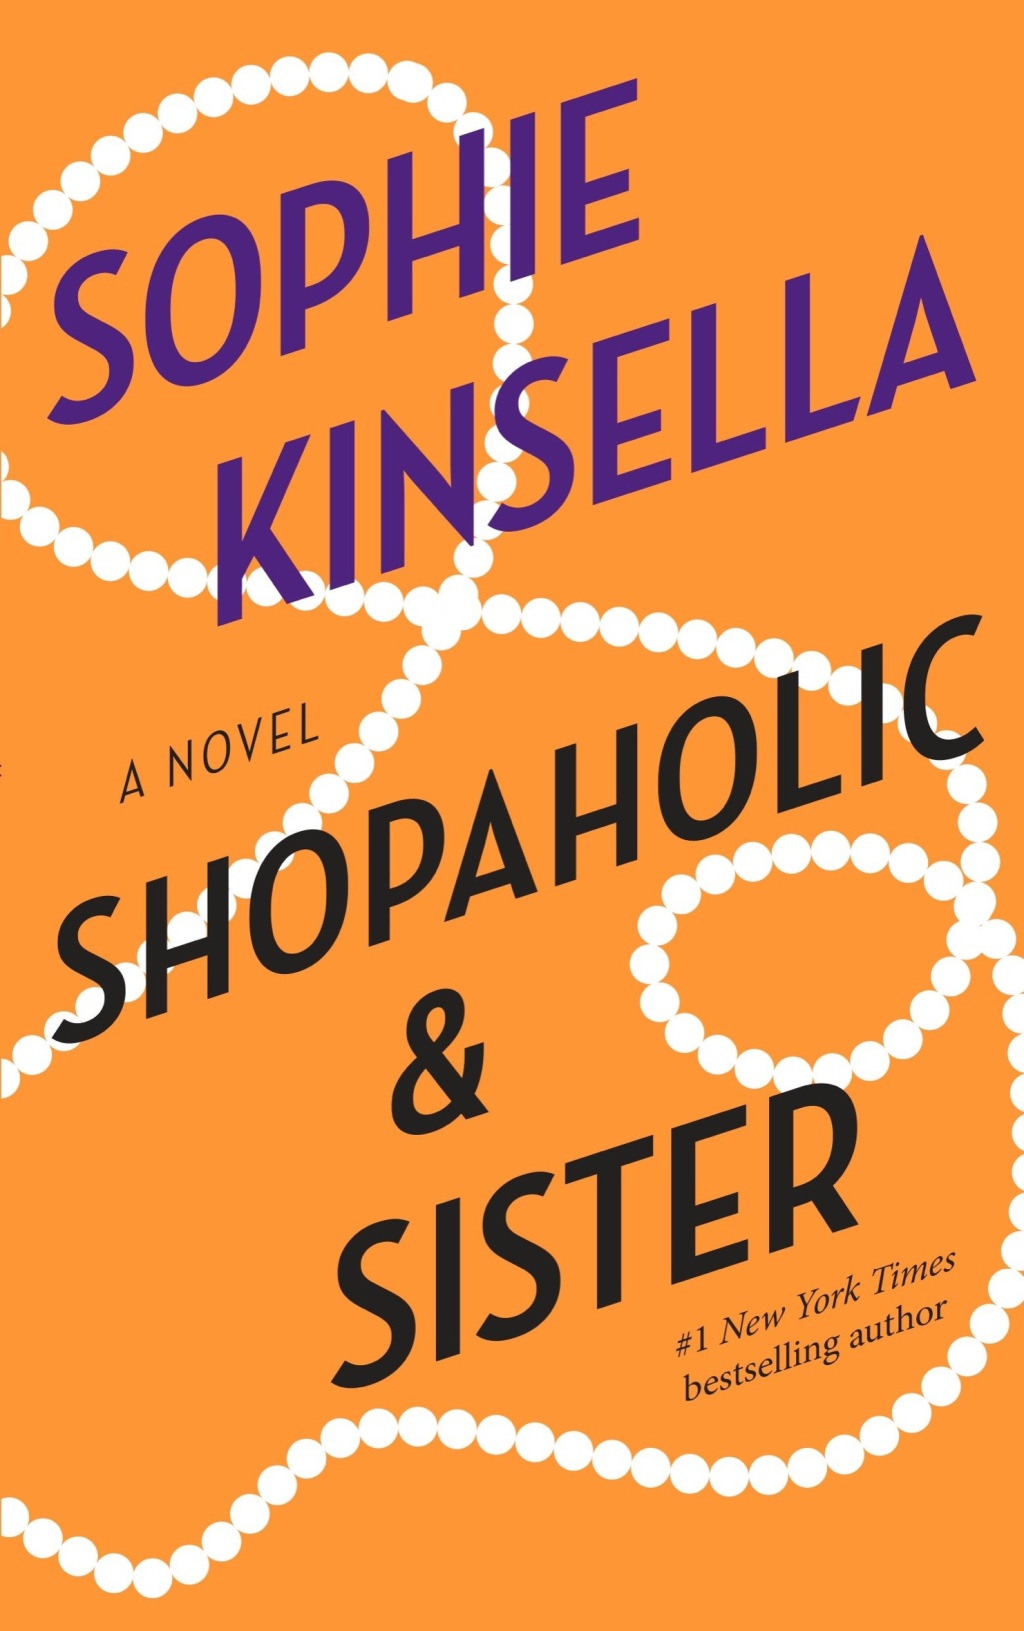 Shopaholic & Sister (eBook) - Sophie Kinsella,